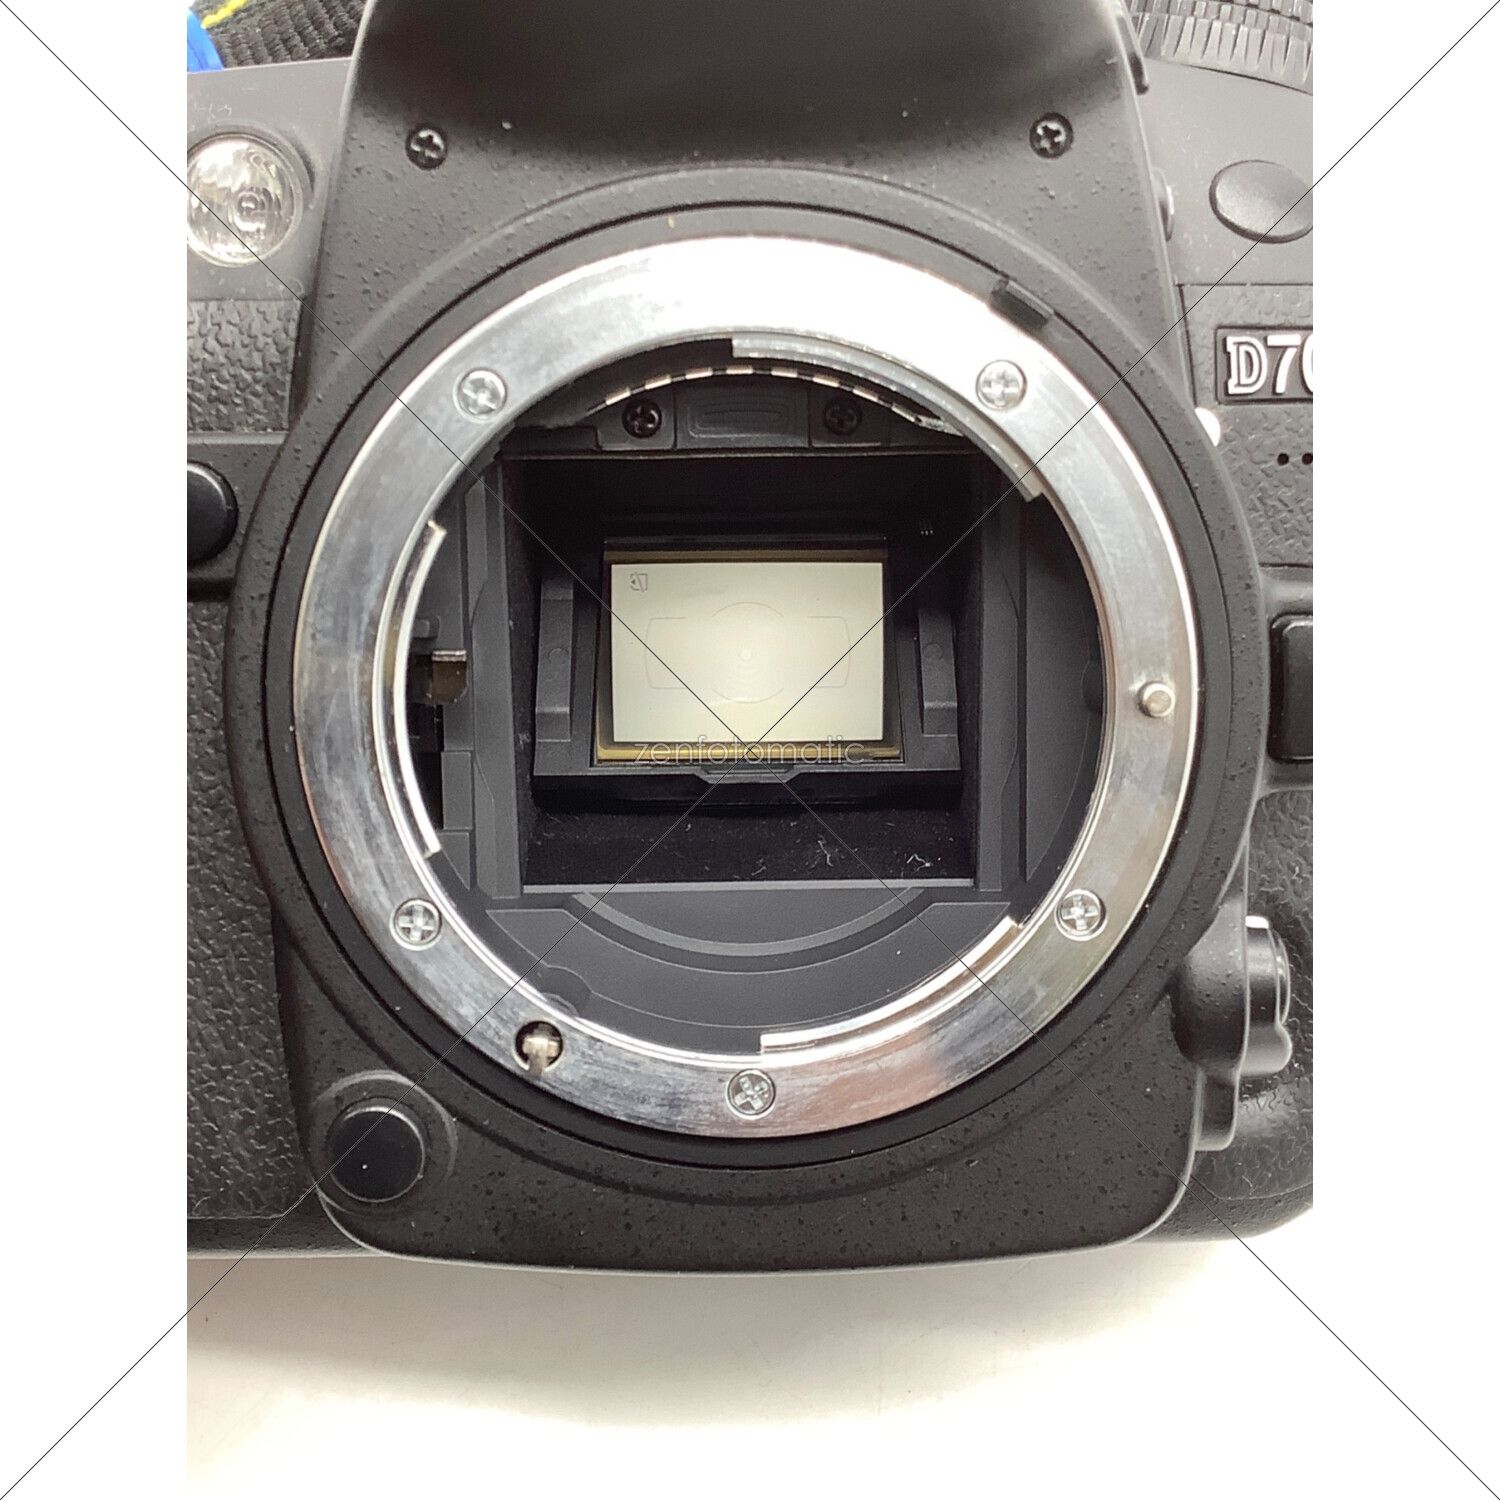 Nikon (ニコン) デジタル一眼レフカメラ 動作確認済 D7000 ボディ 1690